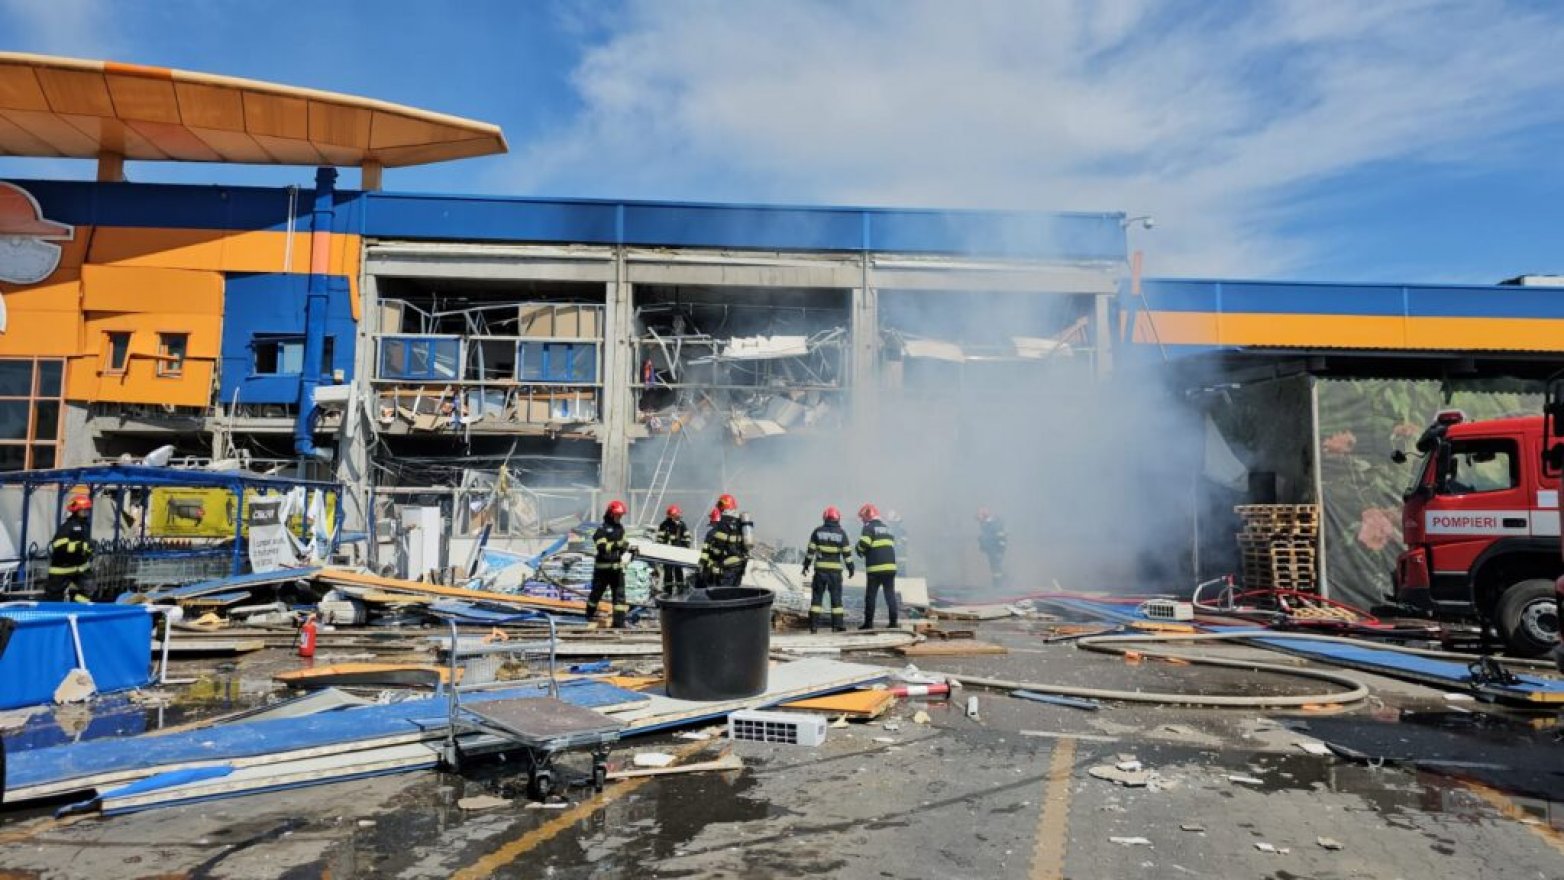 Hatalmas robbanás történt egy romániai barkácsáruházban, többen megsérültek